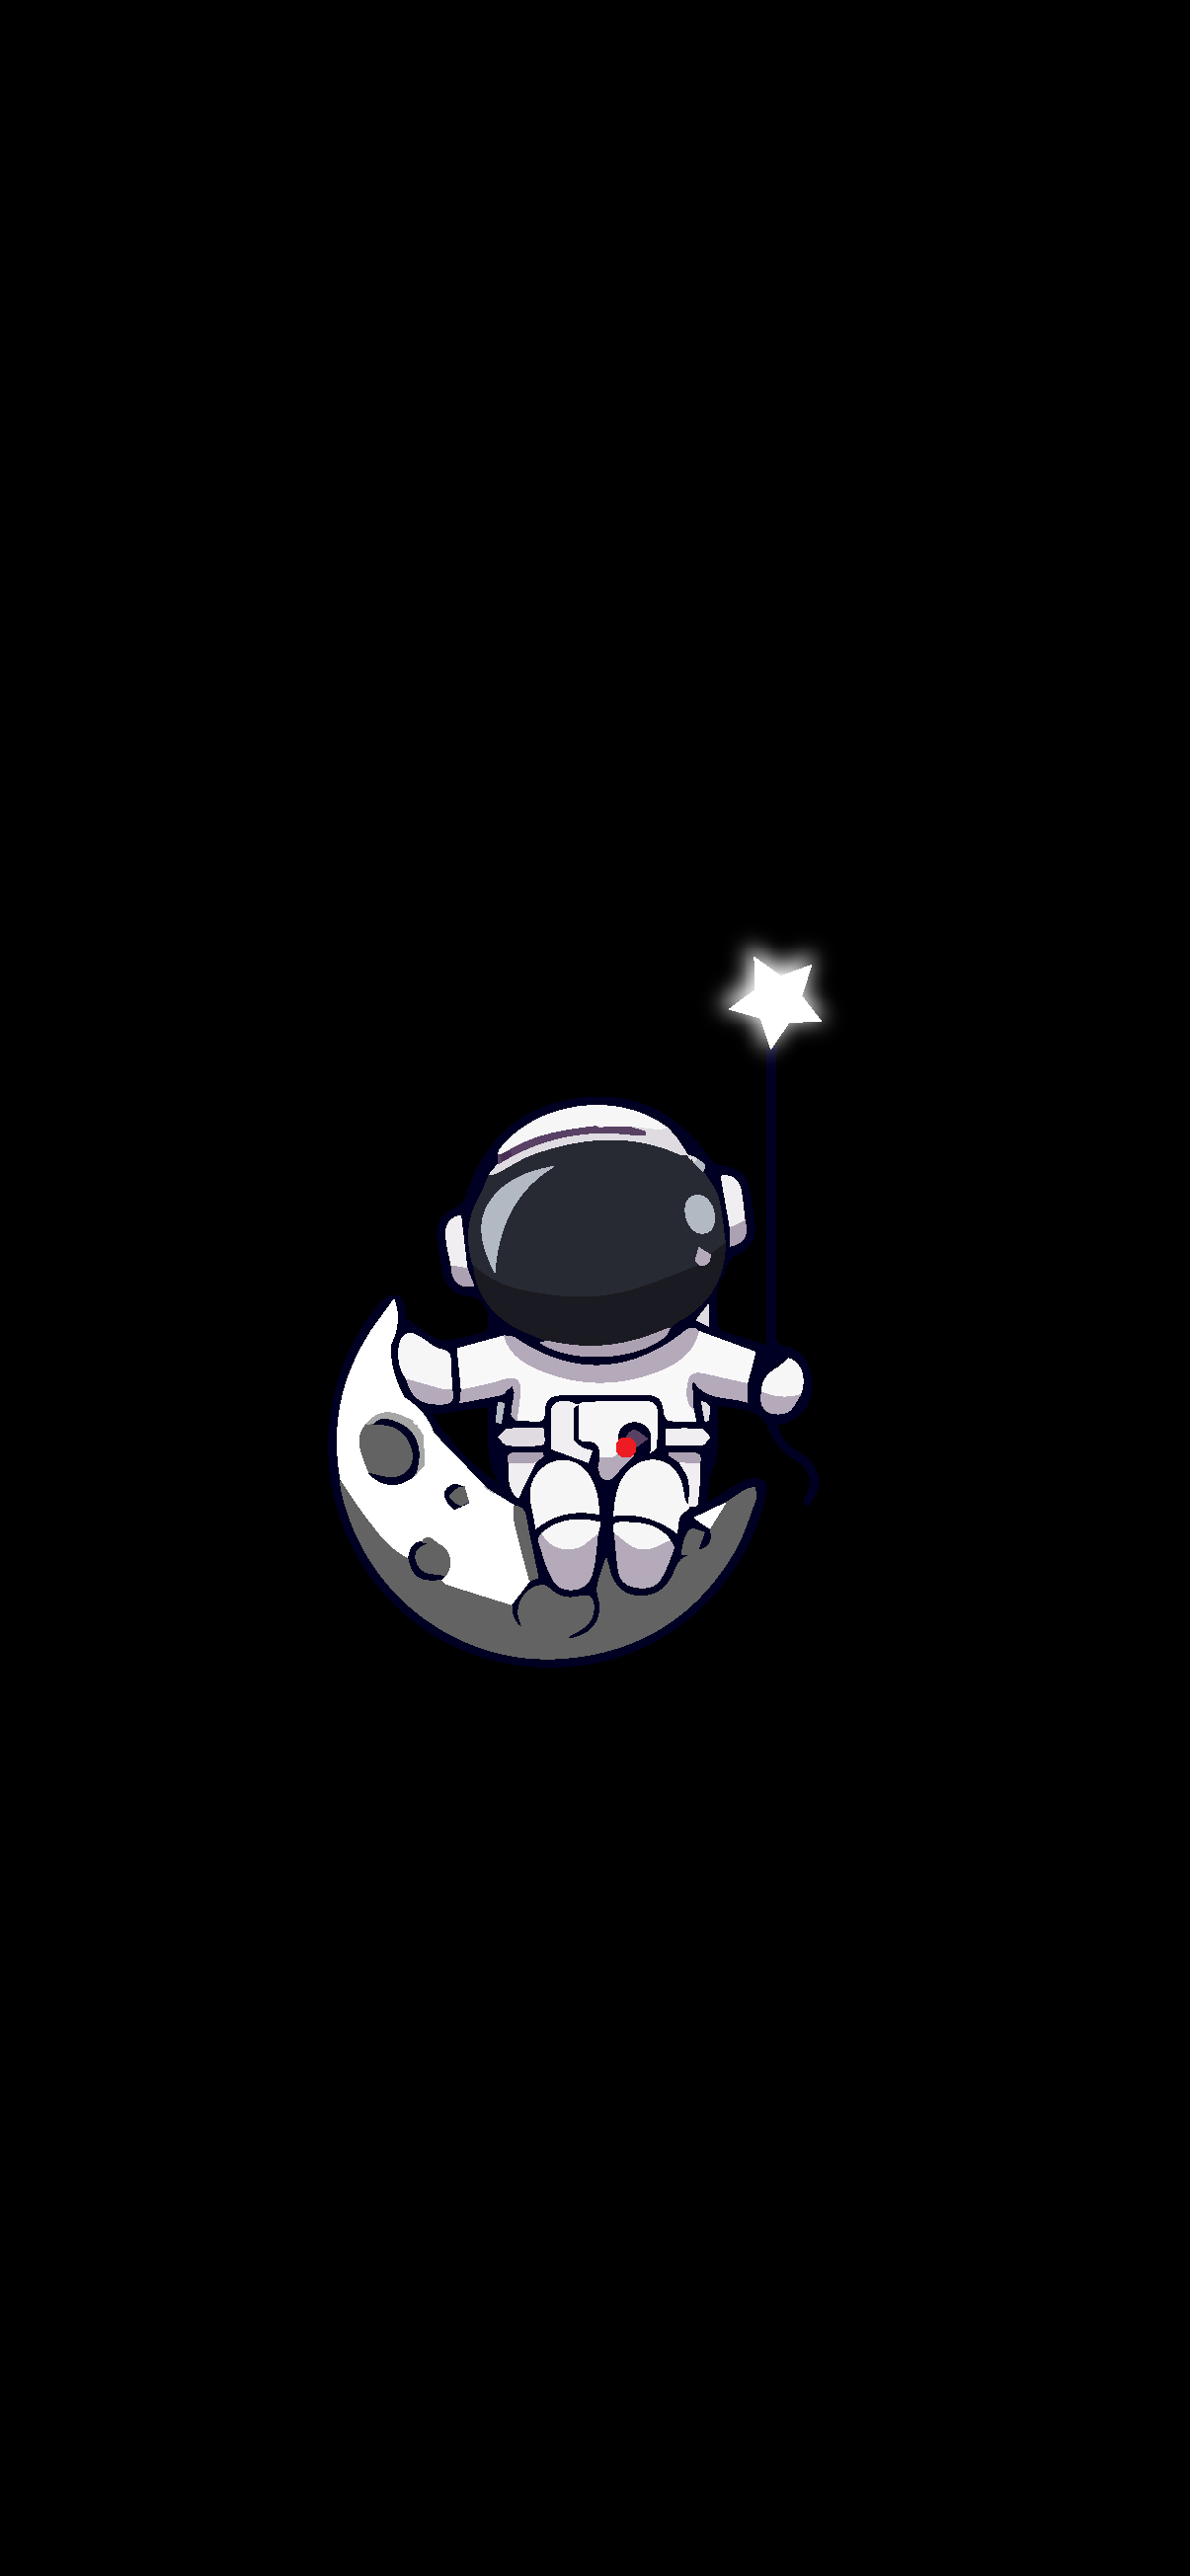 Astronaut HD Wallpapers Free download  PixelsTalkNet